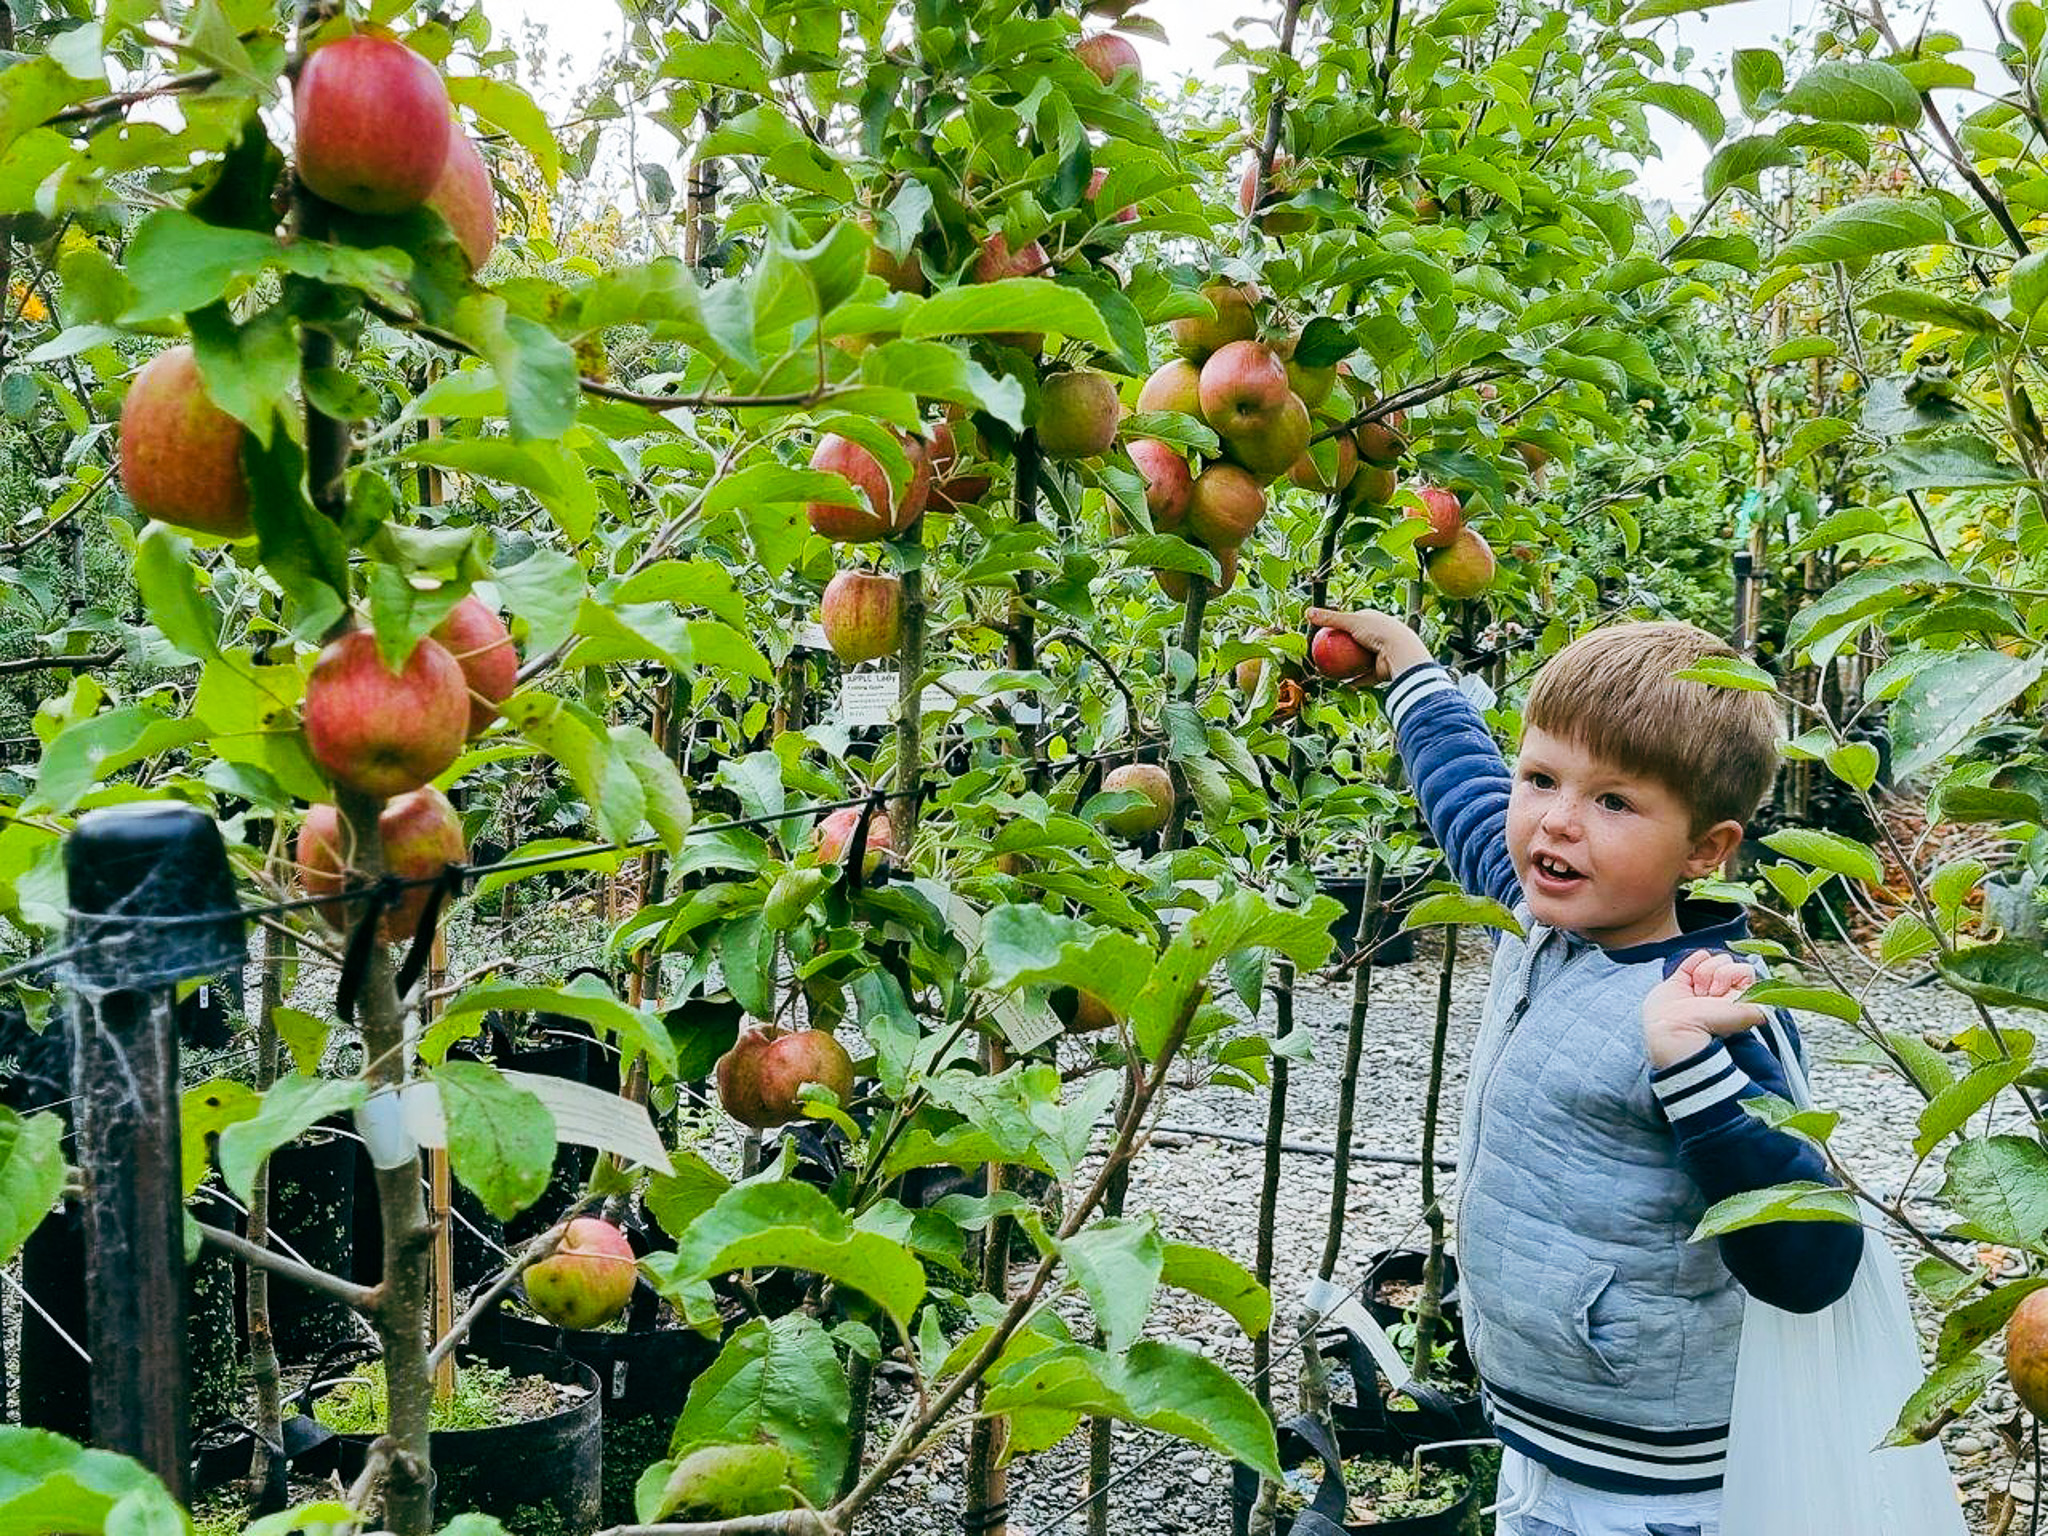 Apples - Manley Picking, February